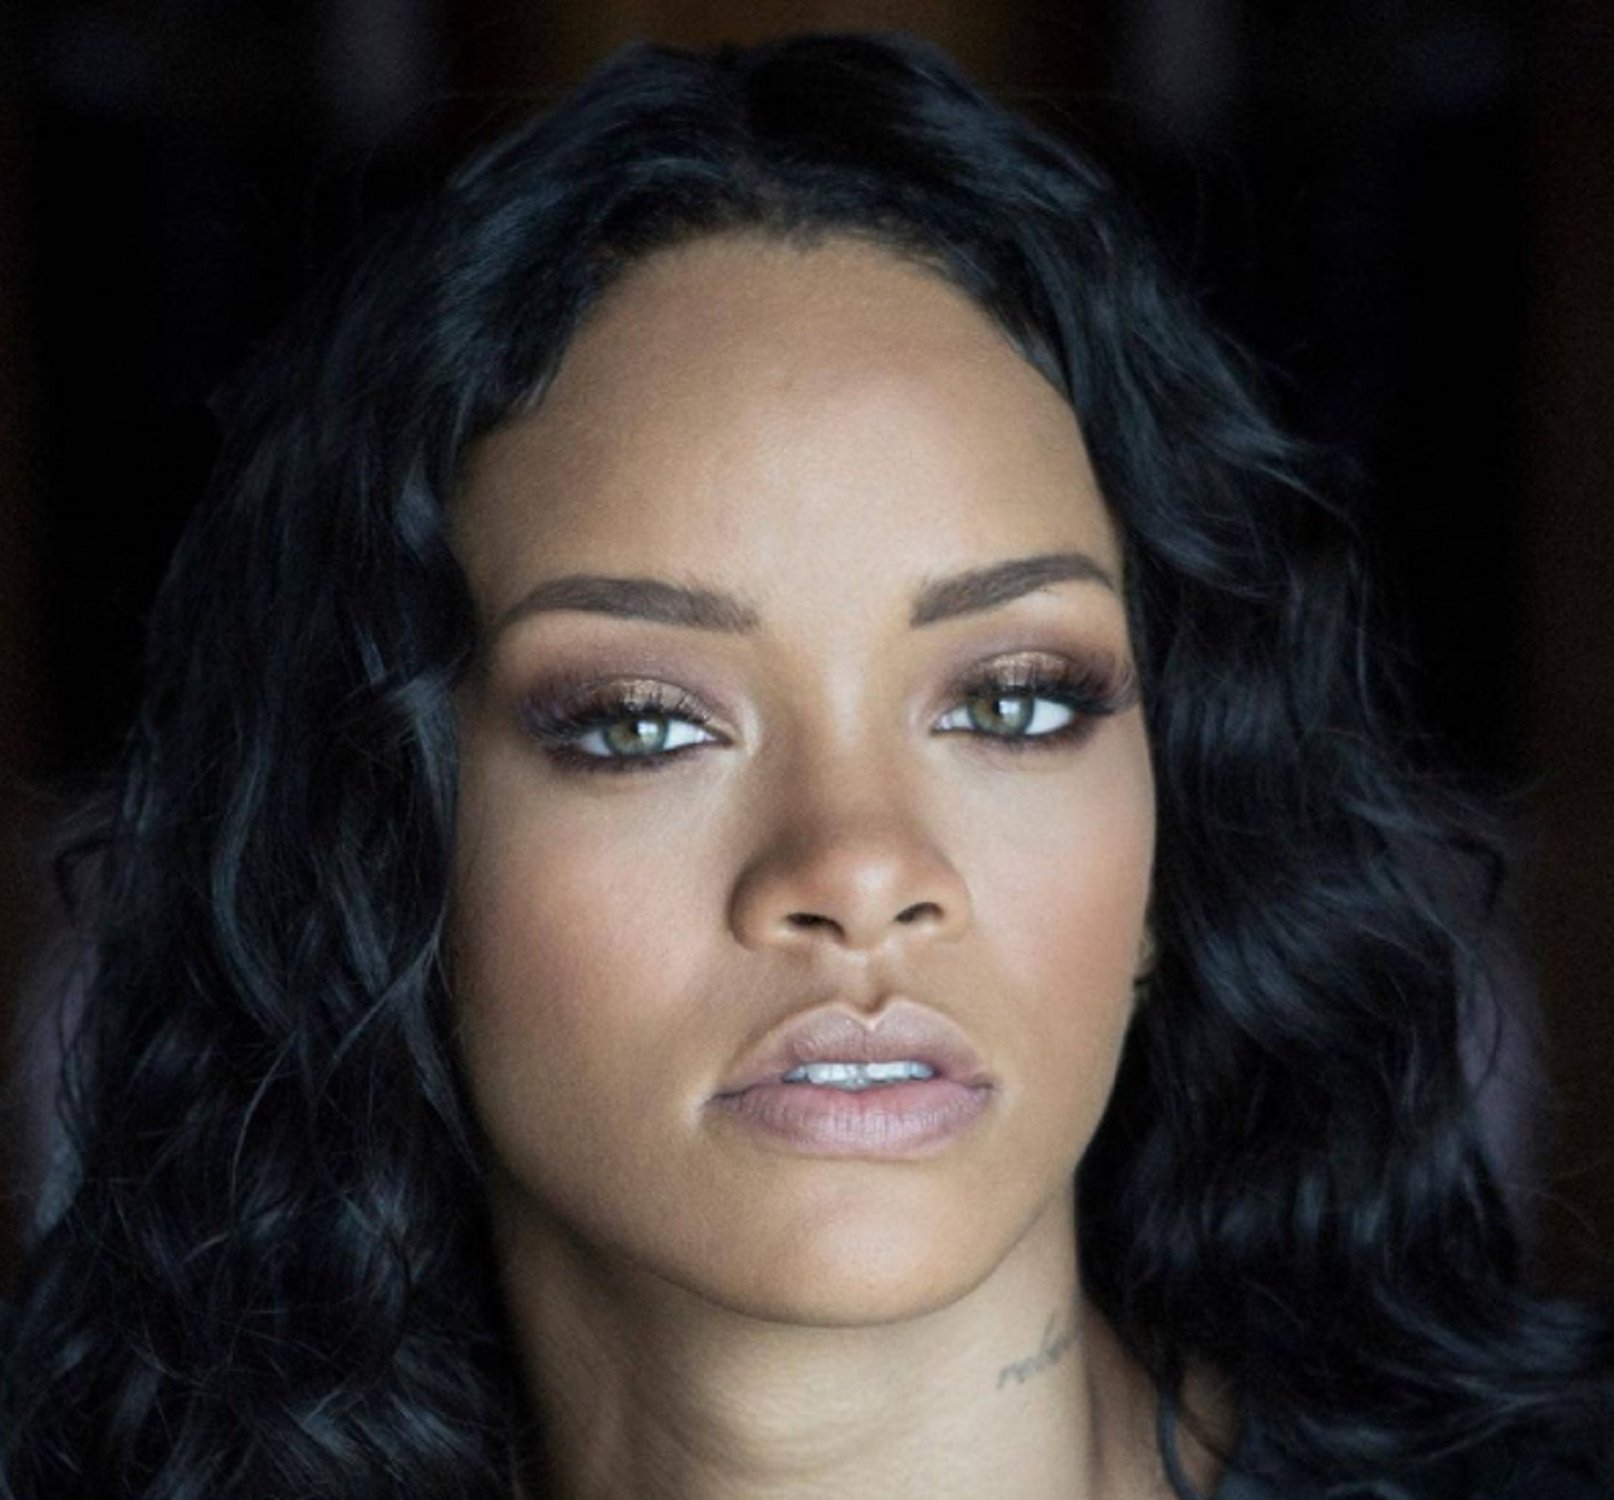 "Vaig només per Rihanna. No m'importa". La Super Bowl no enamora aquesta famosa cantant